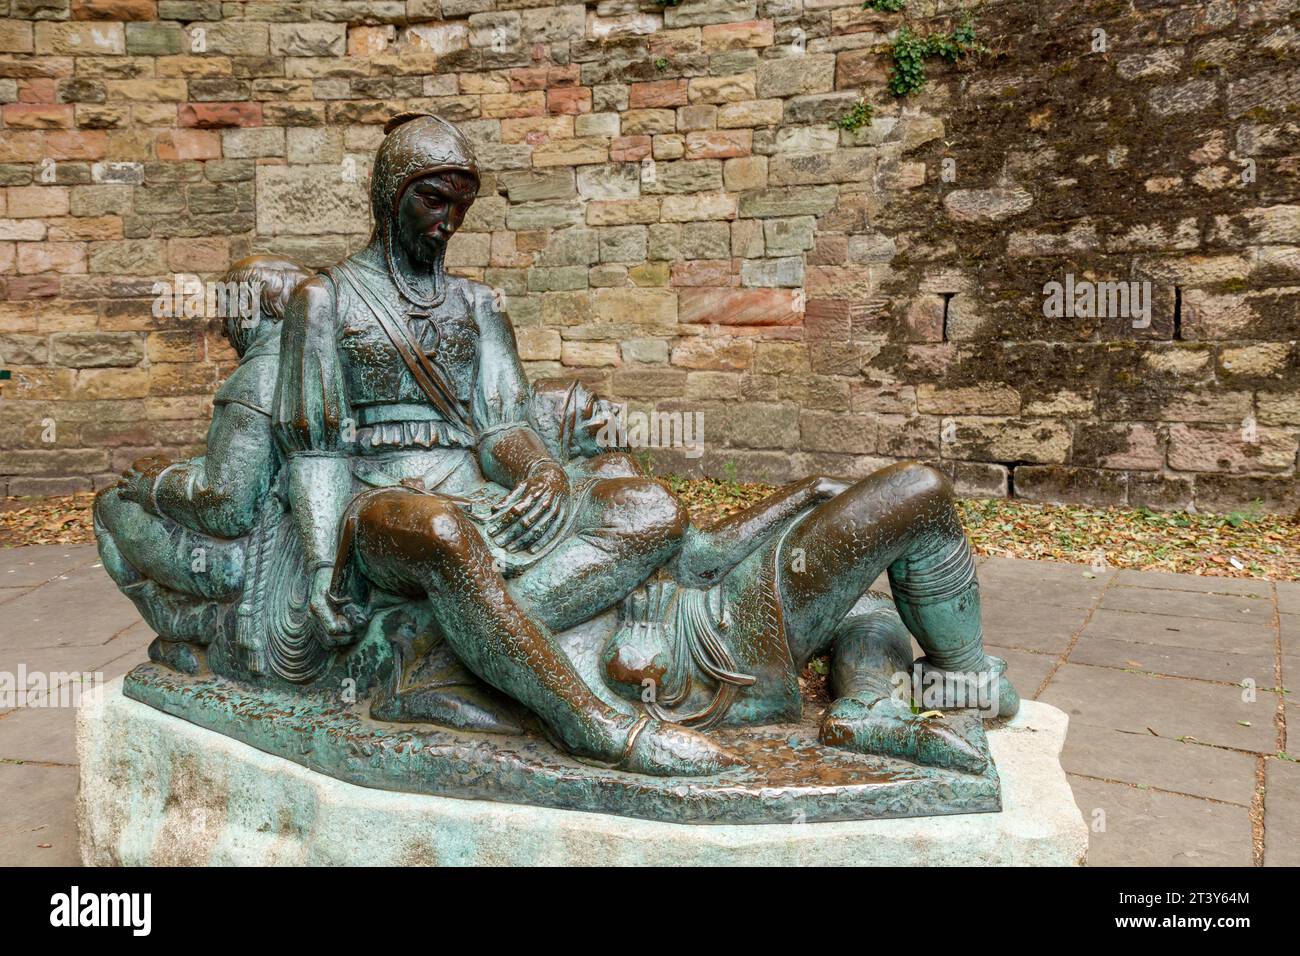 Robin Hood's merry men statue, Nottingham Stock Photo